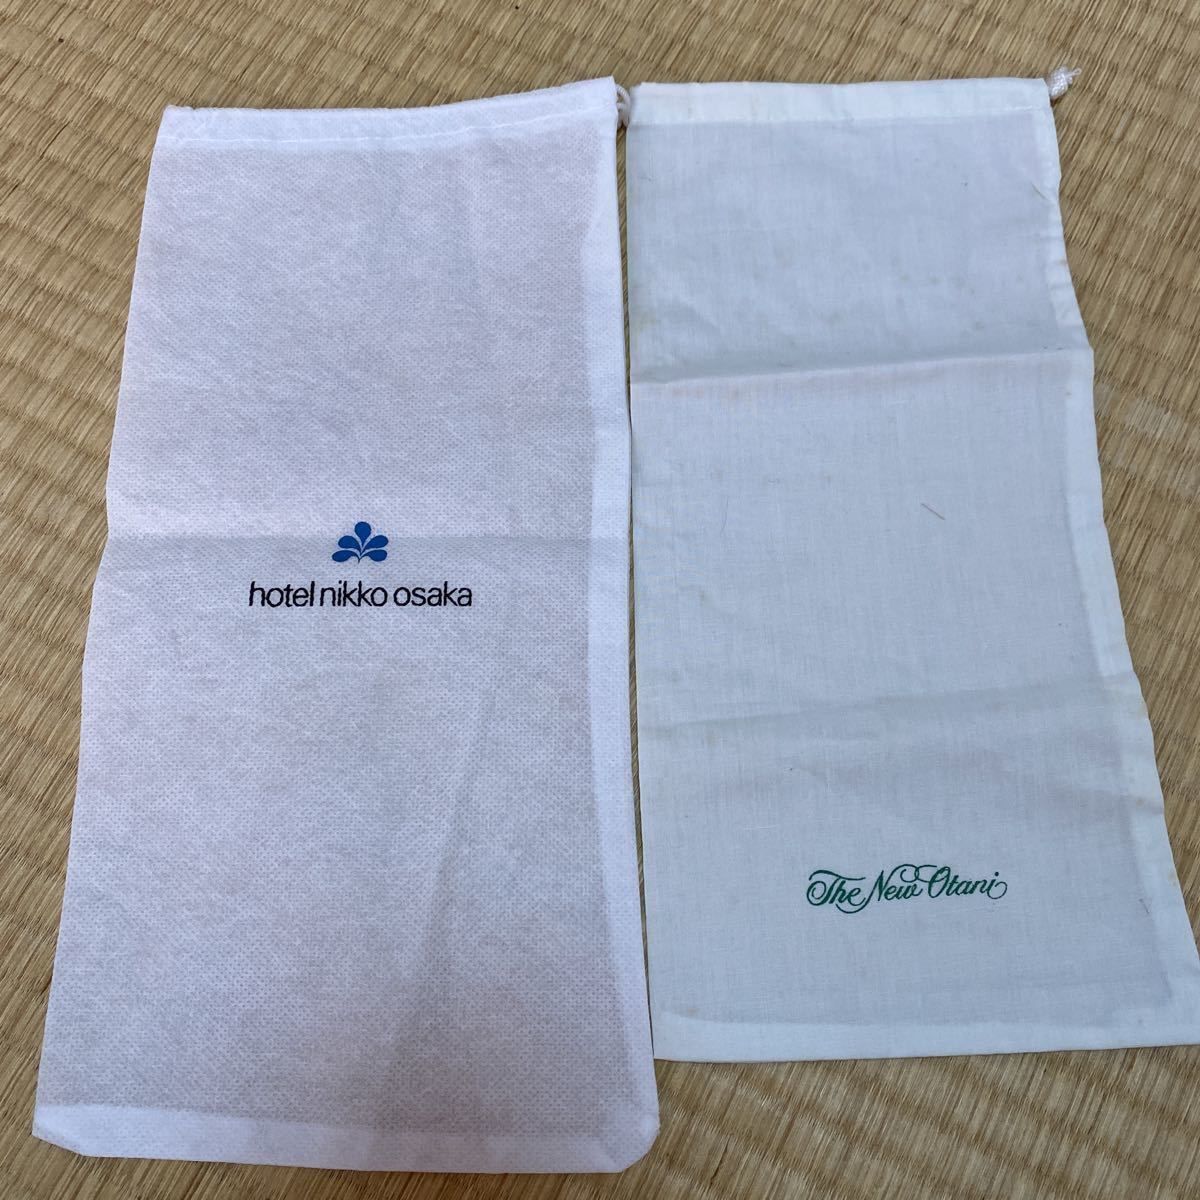 ホテル日航大阪 ホテル日航 日航ホテル ニューオータニ スリッパ 袋 巾着 ポーチ まとめて 大量 アメニティ 高級ホテル グッズ ANA 収納袋_画像3